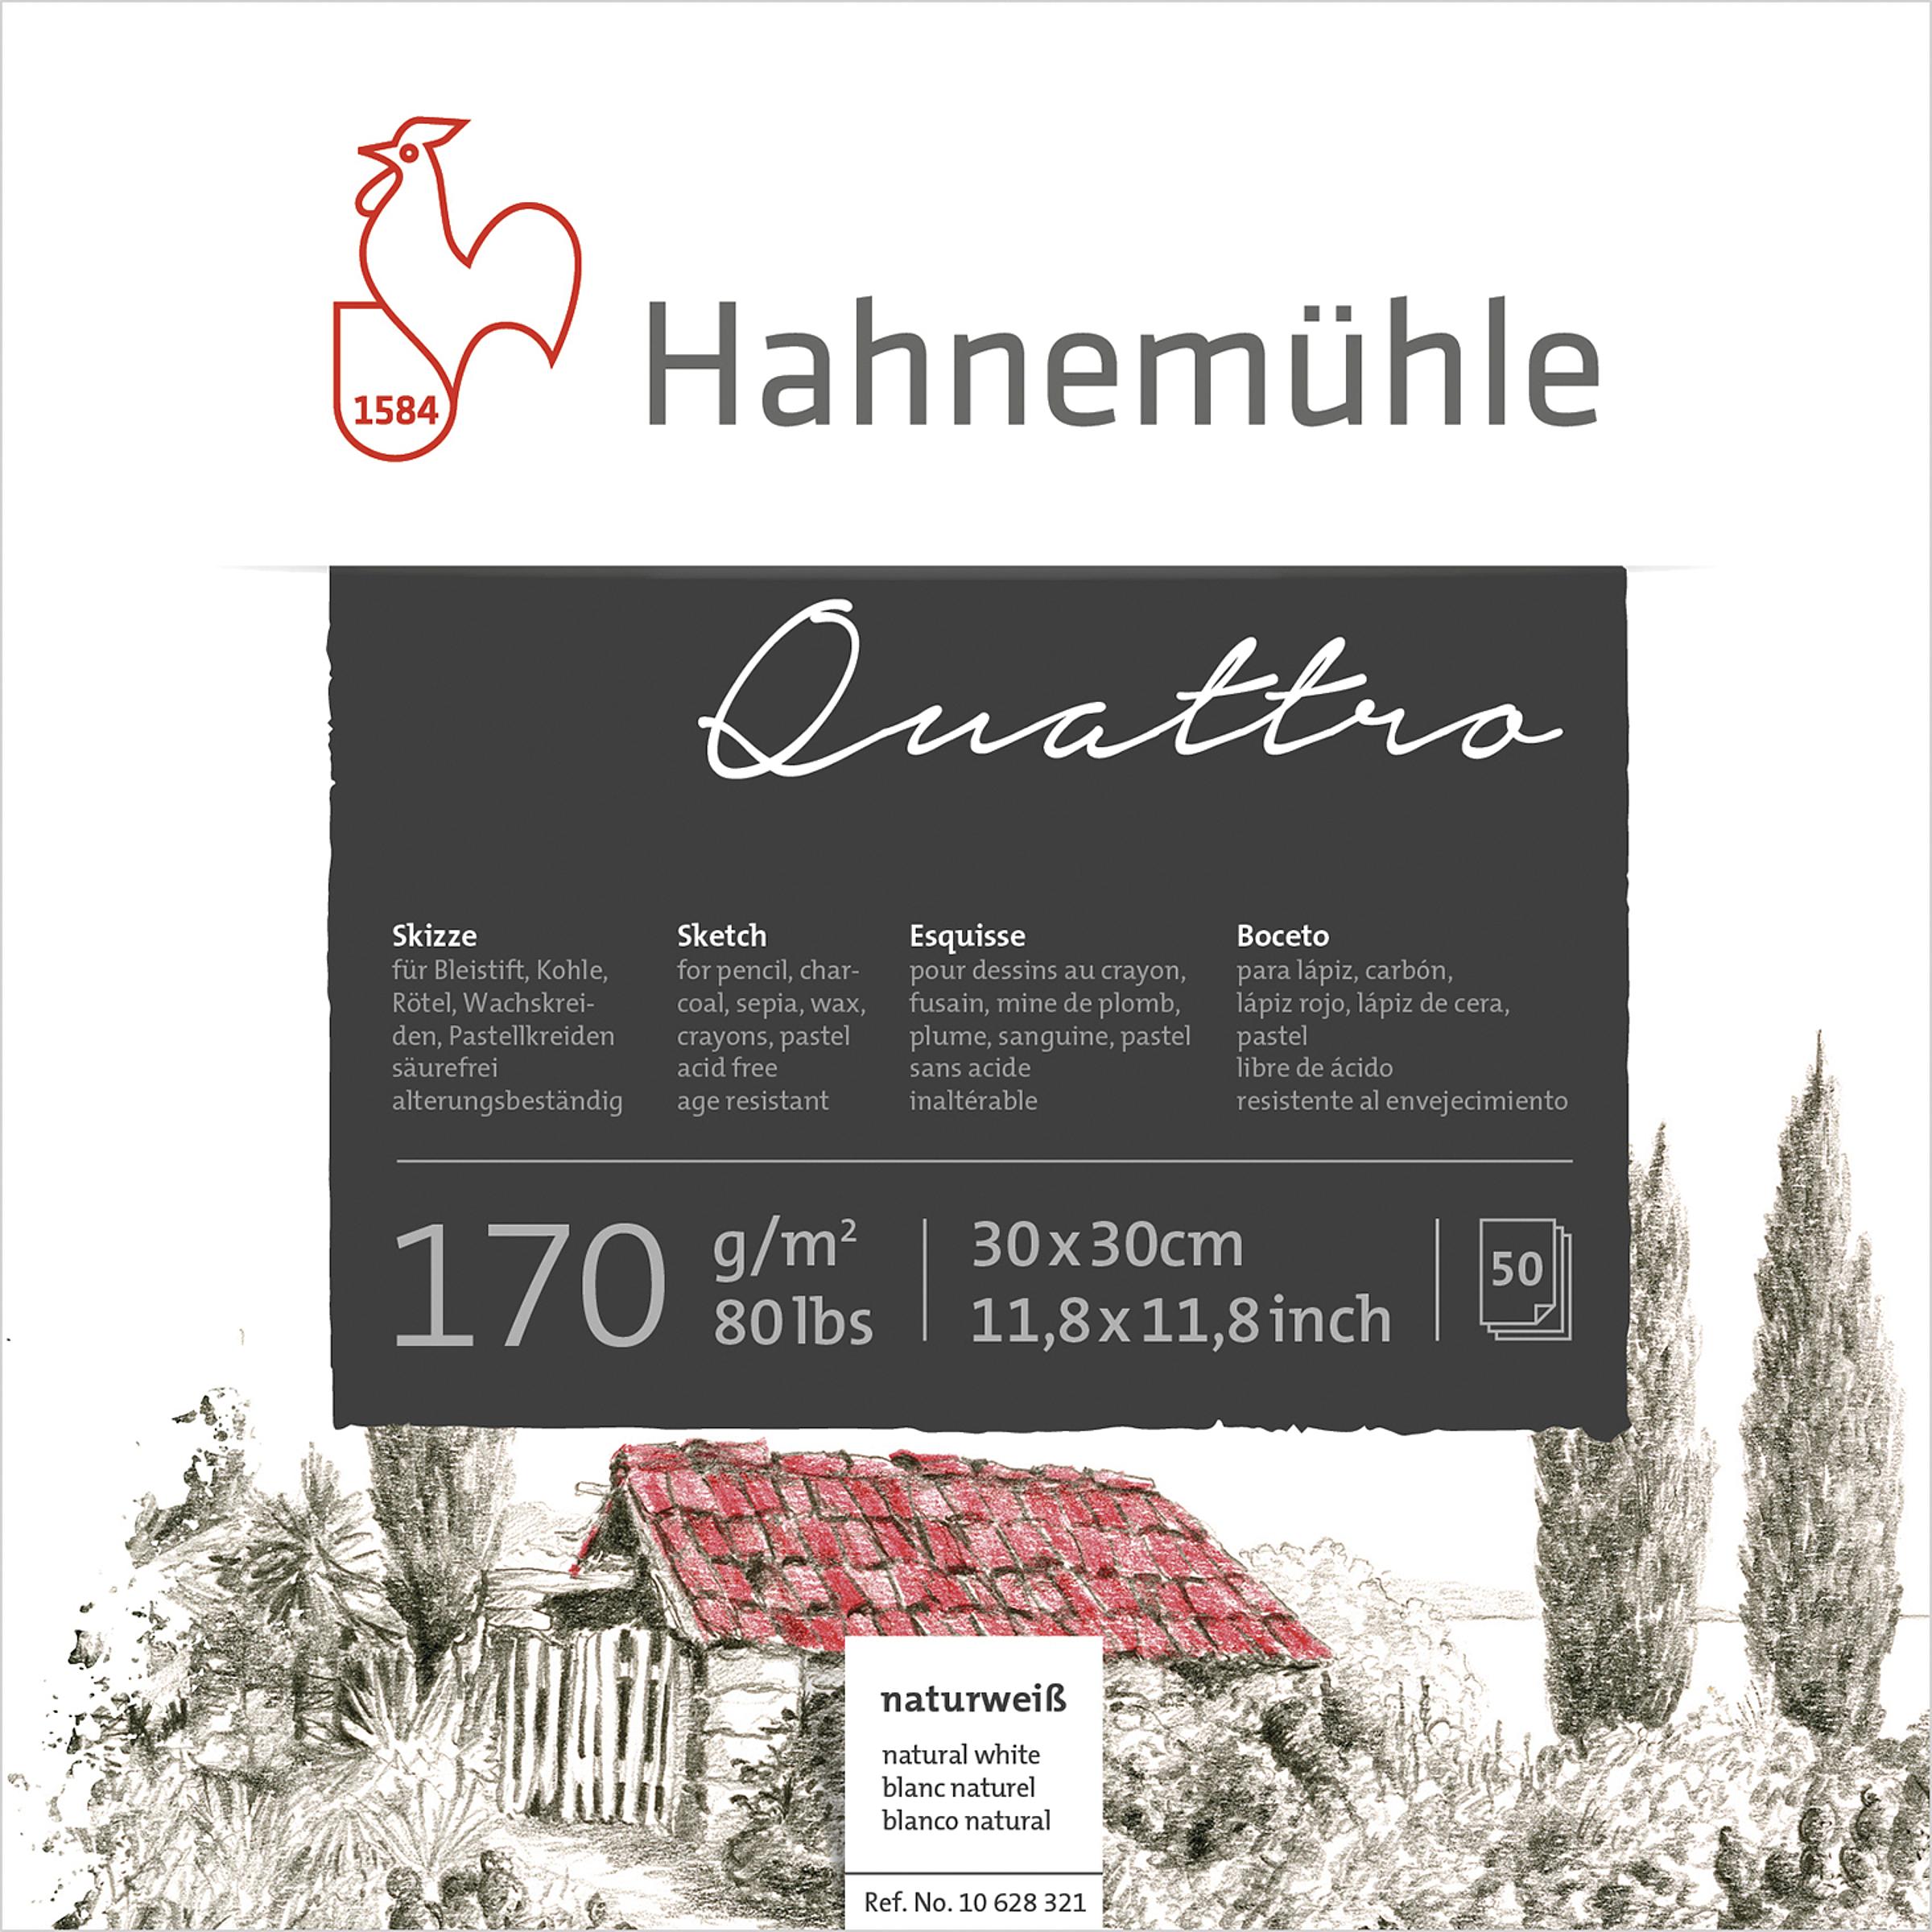 Hahnemühle Quattro Skizzenblock, boesner - Professionelle  Künstlermaterialien und Künstlerbedarf